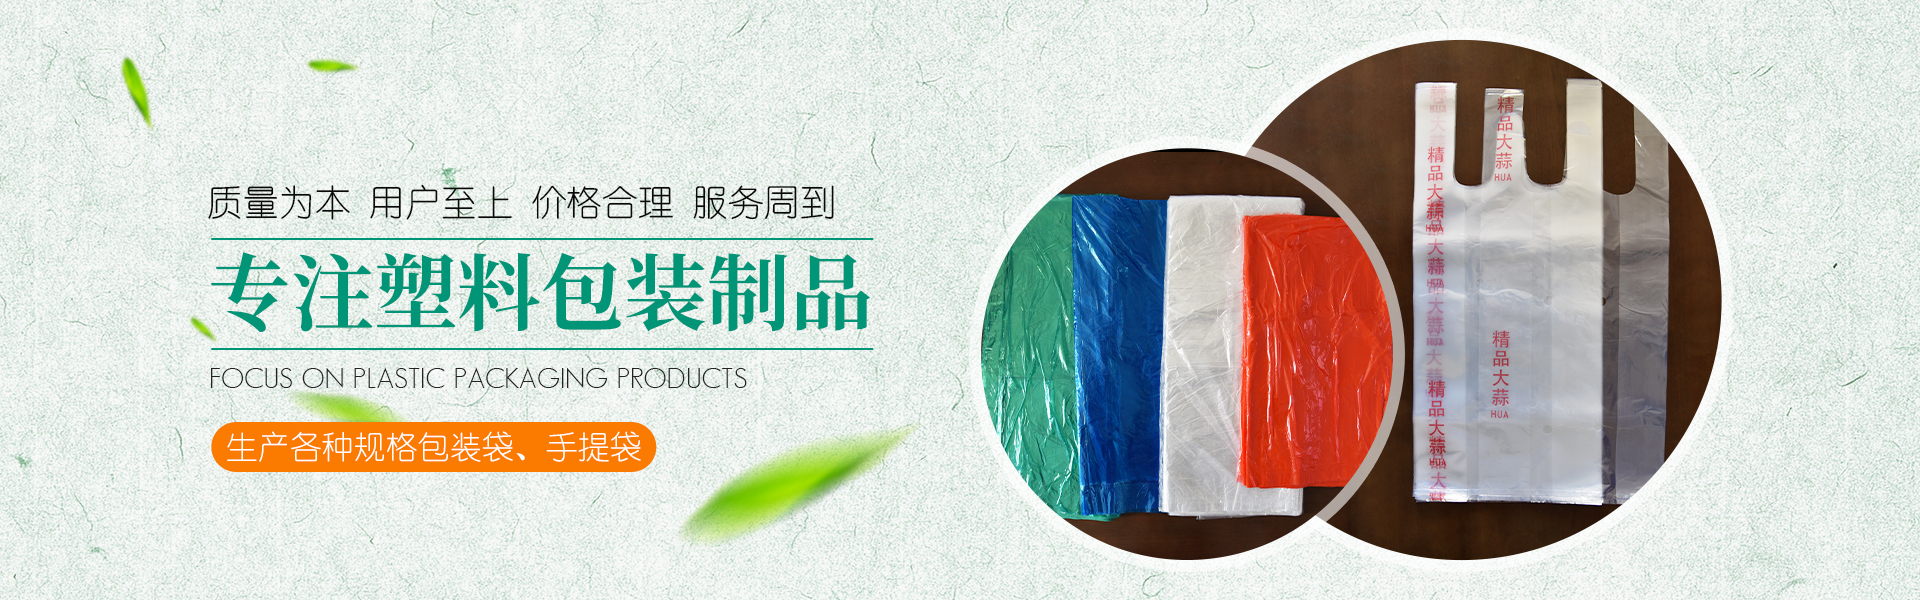 青州市金海源塑料包裝制品有限(Xiàn)公∆司∆